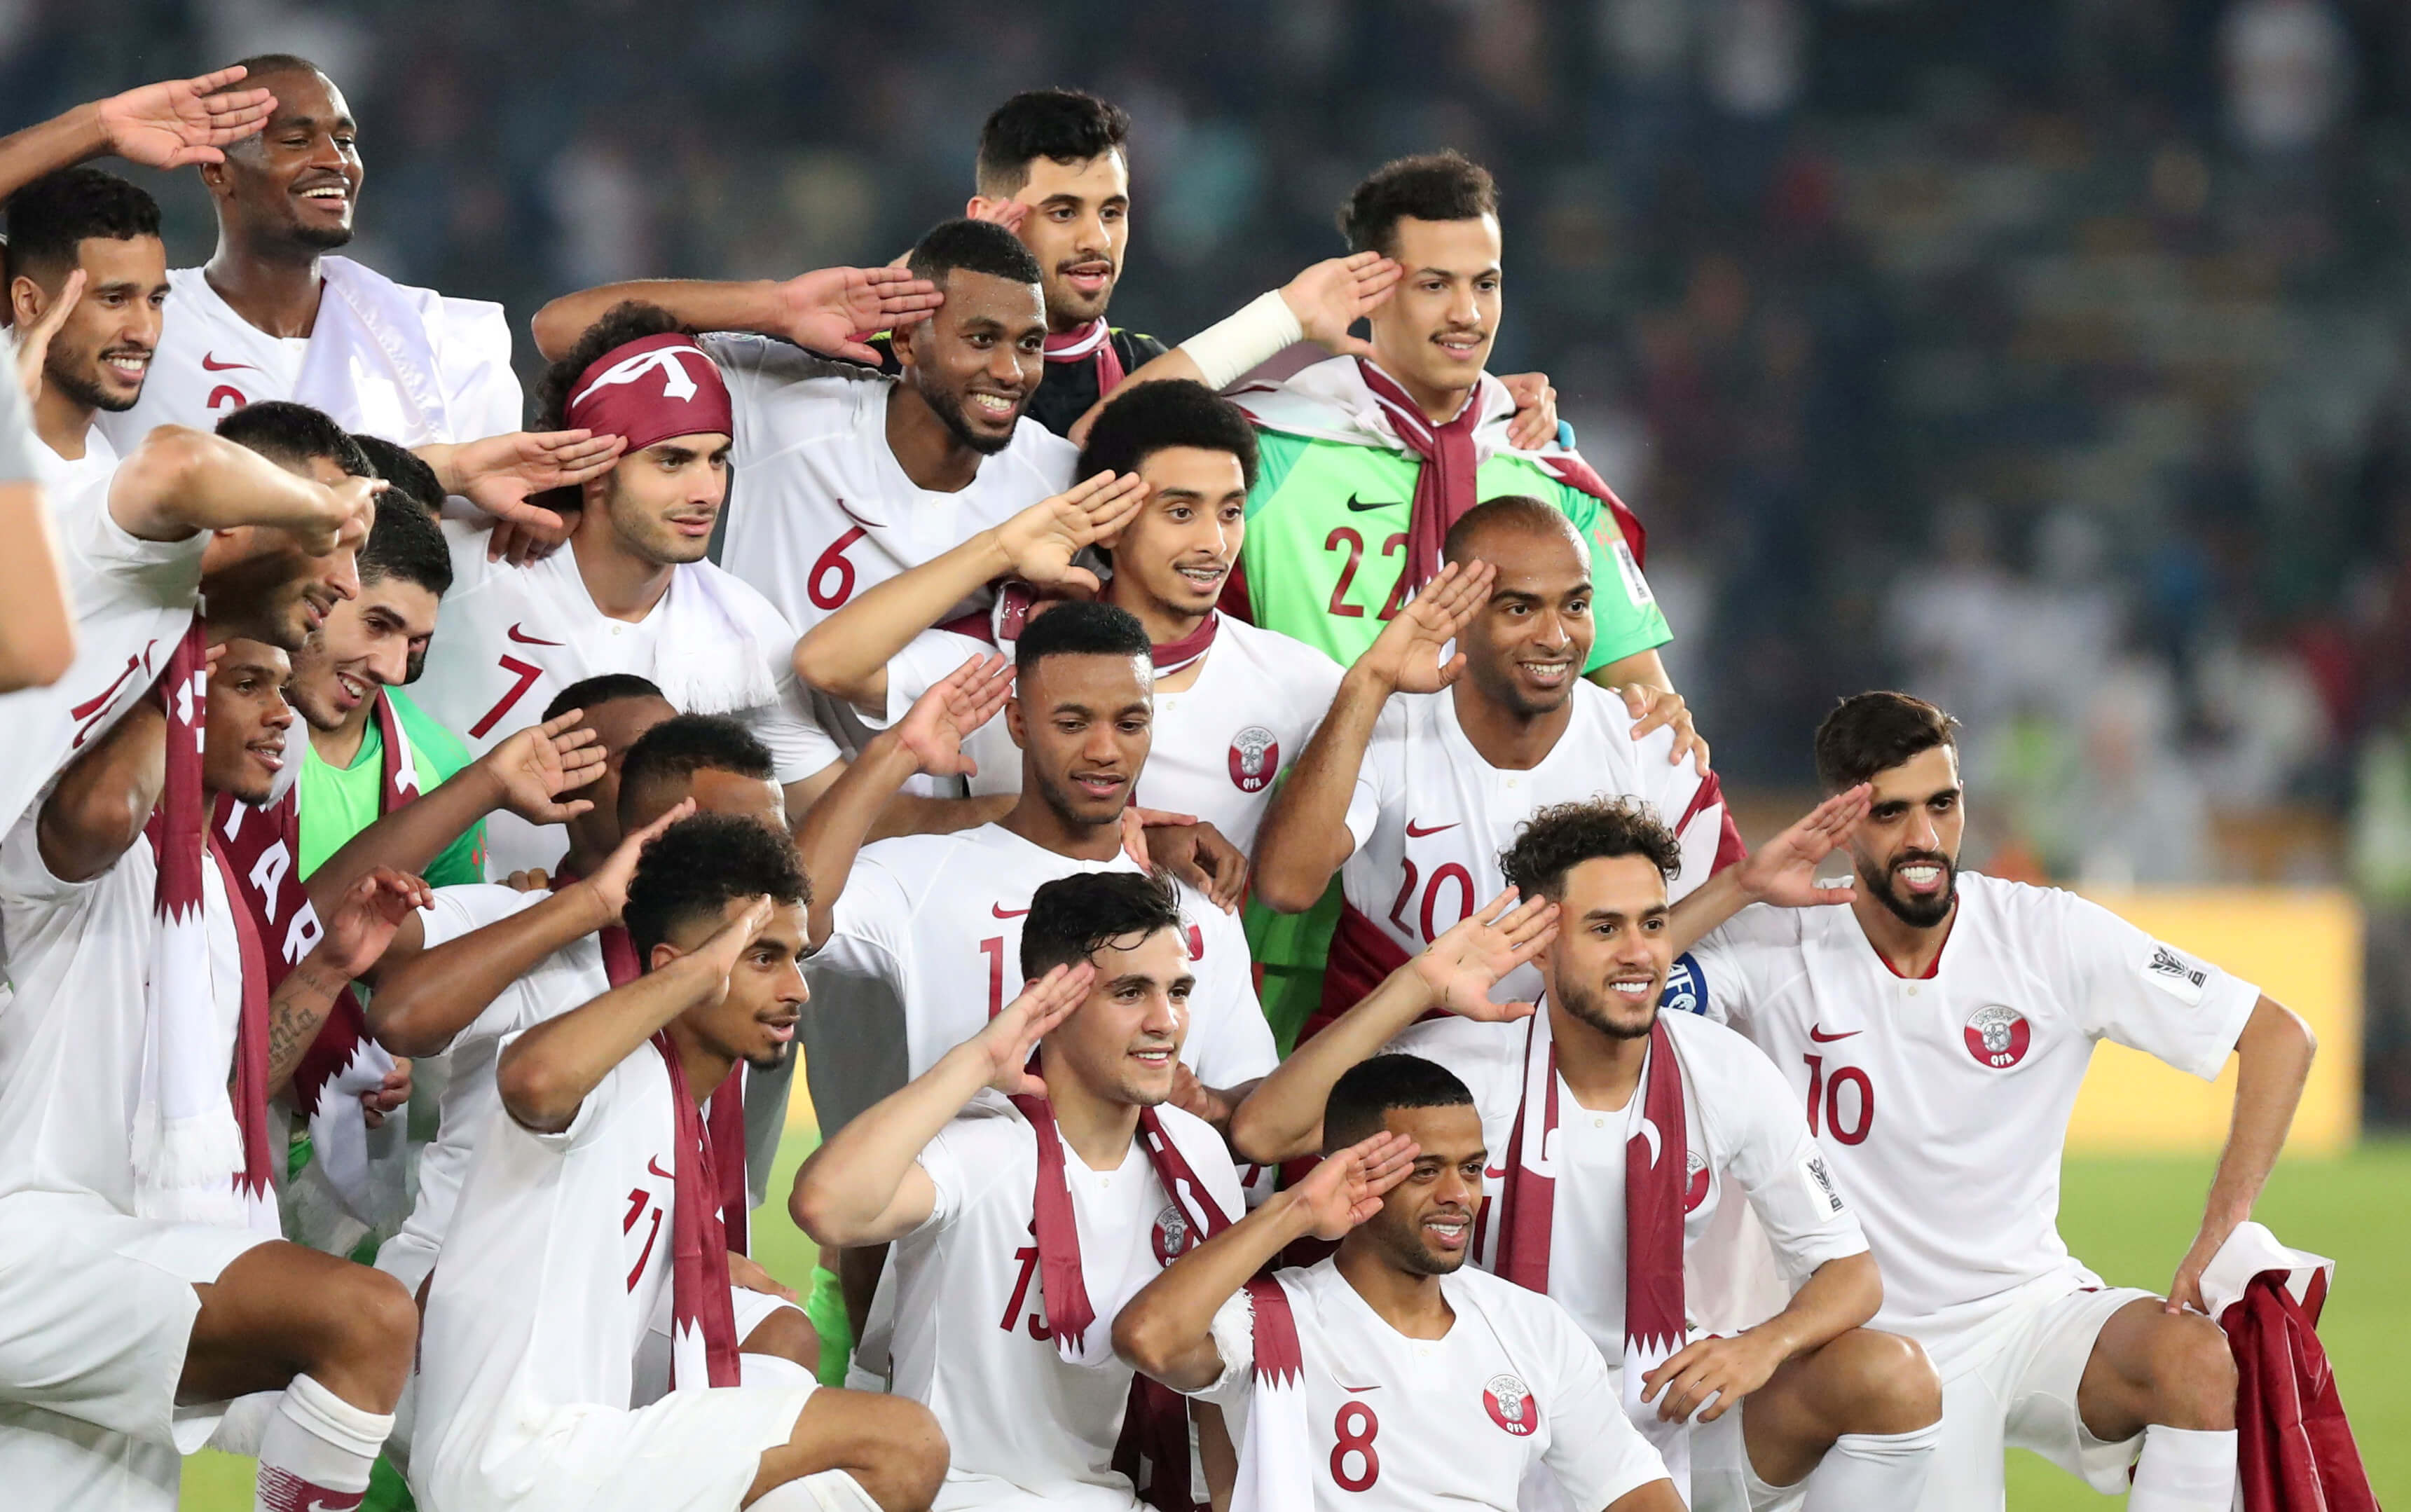 “Βόμβα” στο Κύπελλο Εθνών Ασίας! Το Κατάρ κατέκτησε το τρόπαιο – video